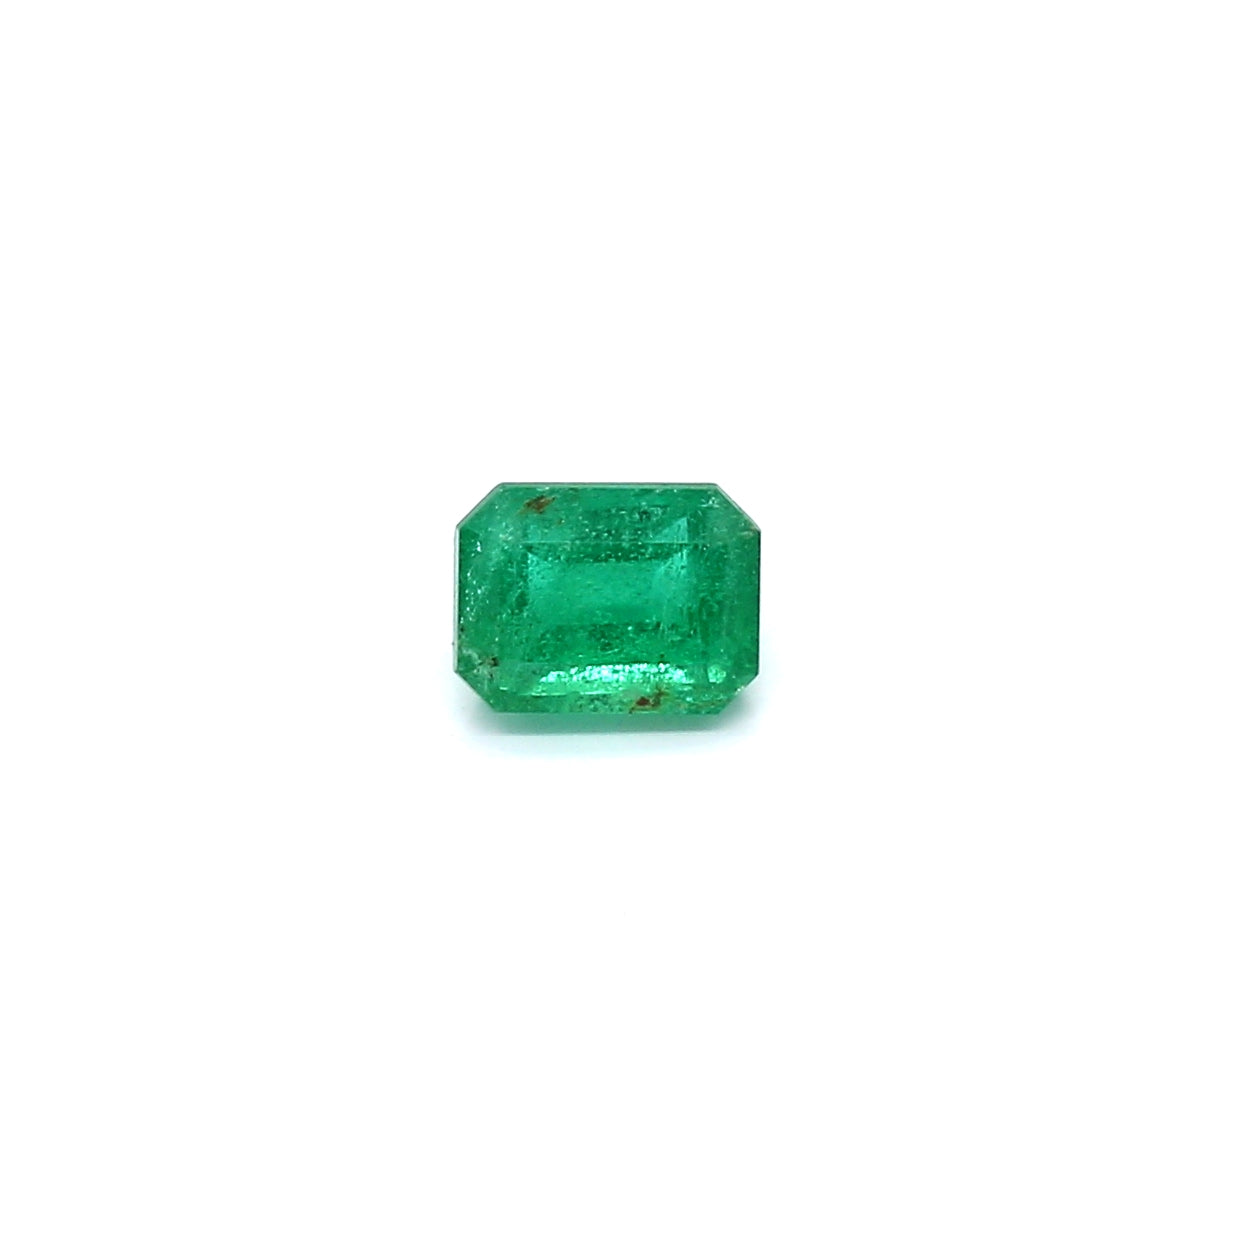 0.54ct Octagon Emerald, Minor Oil, Zambia - 5.35 x 4.04 x 3.34mm